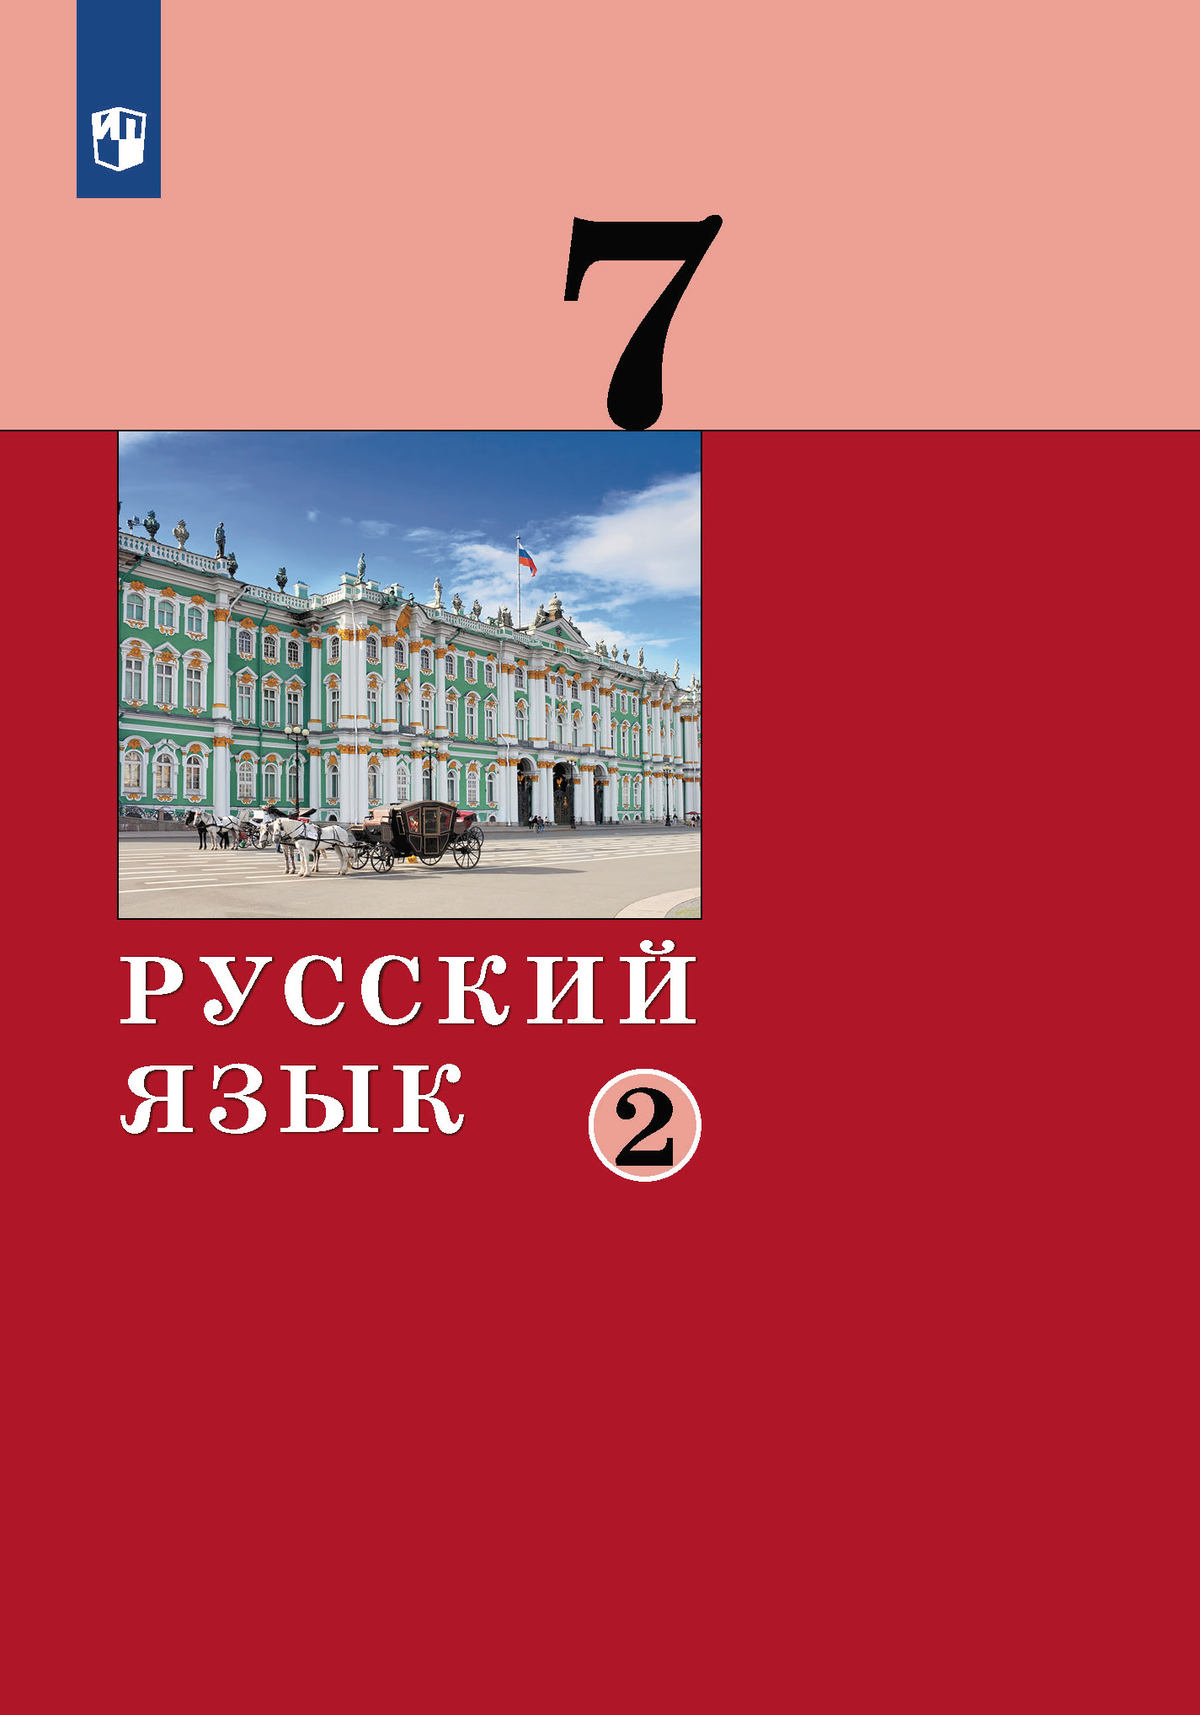 Русский язык.7 класс. Учебник. 2 ч. Часть 2 1